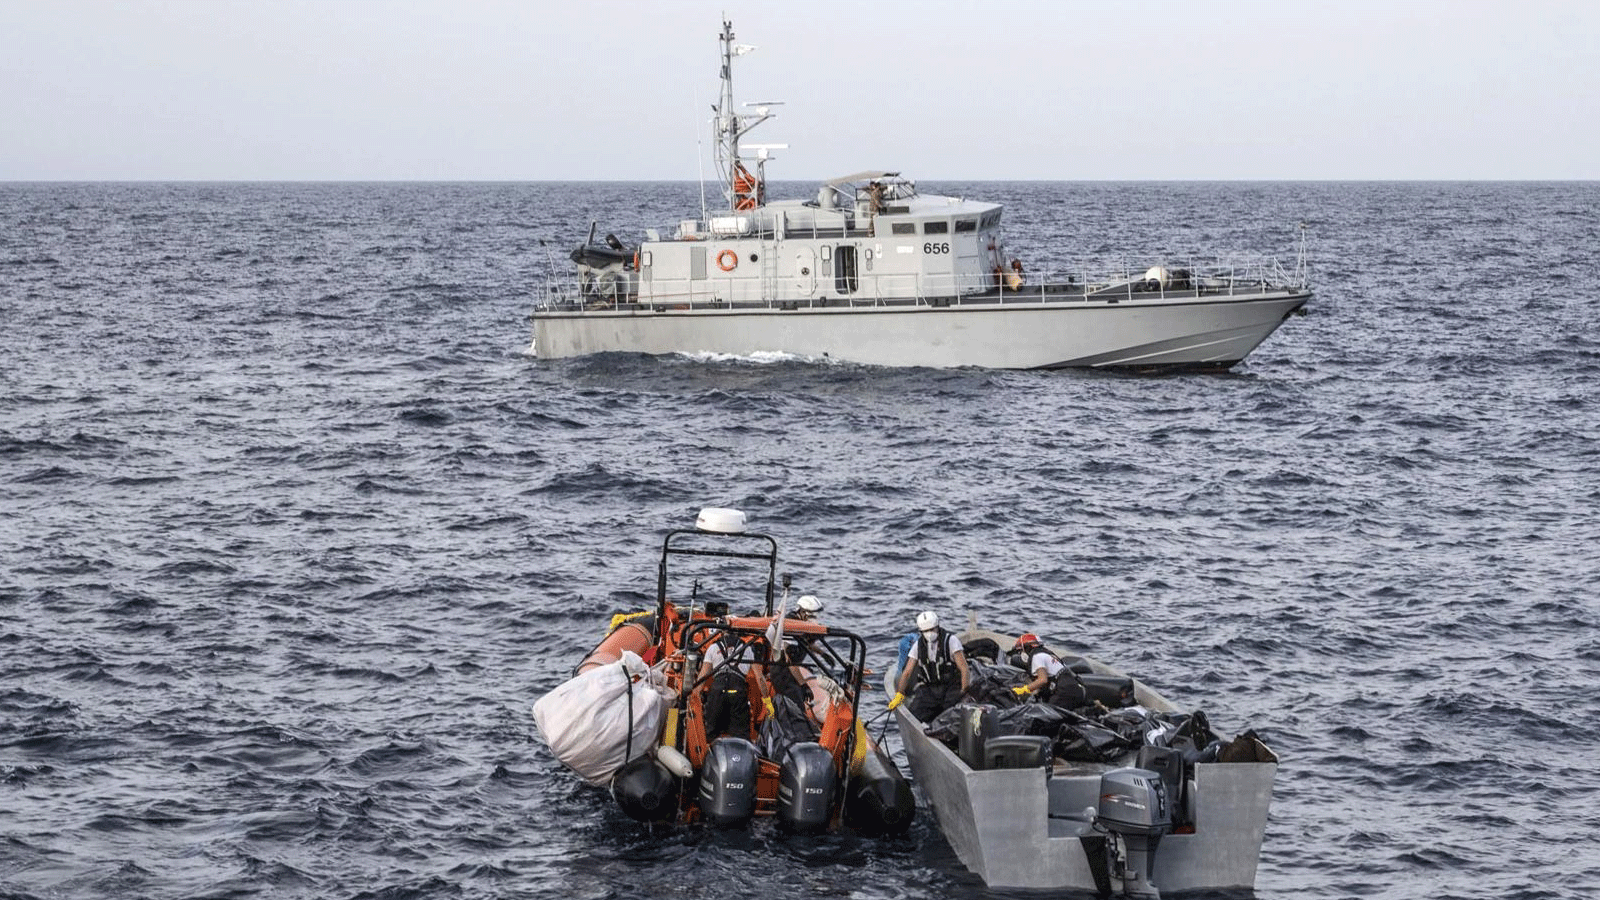  قوارب الهجرة تستمر رغم الخسائر البشرية